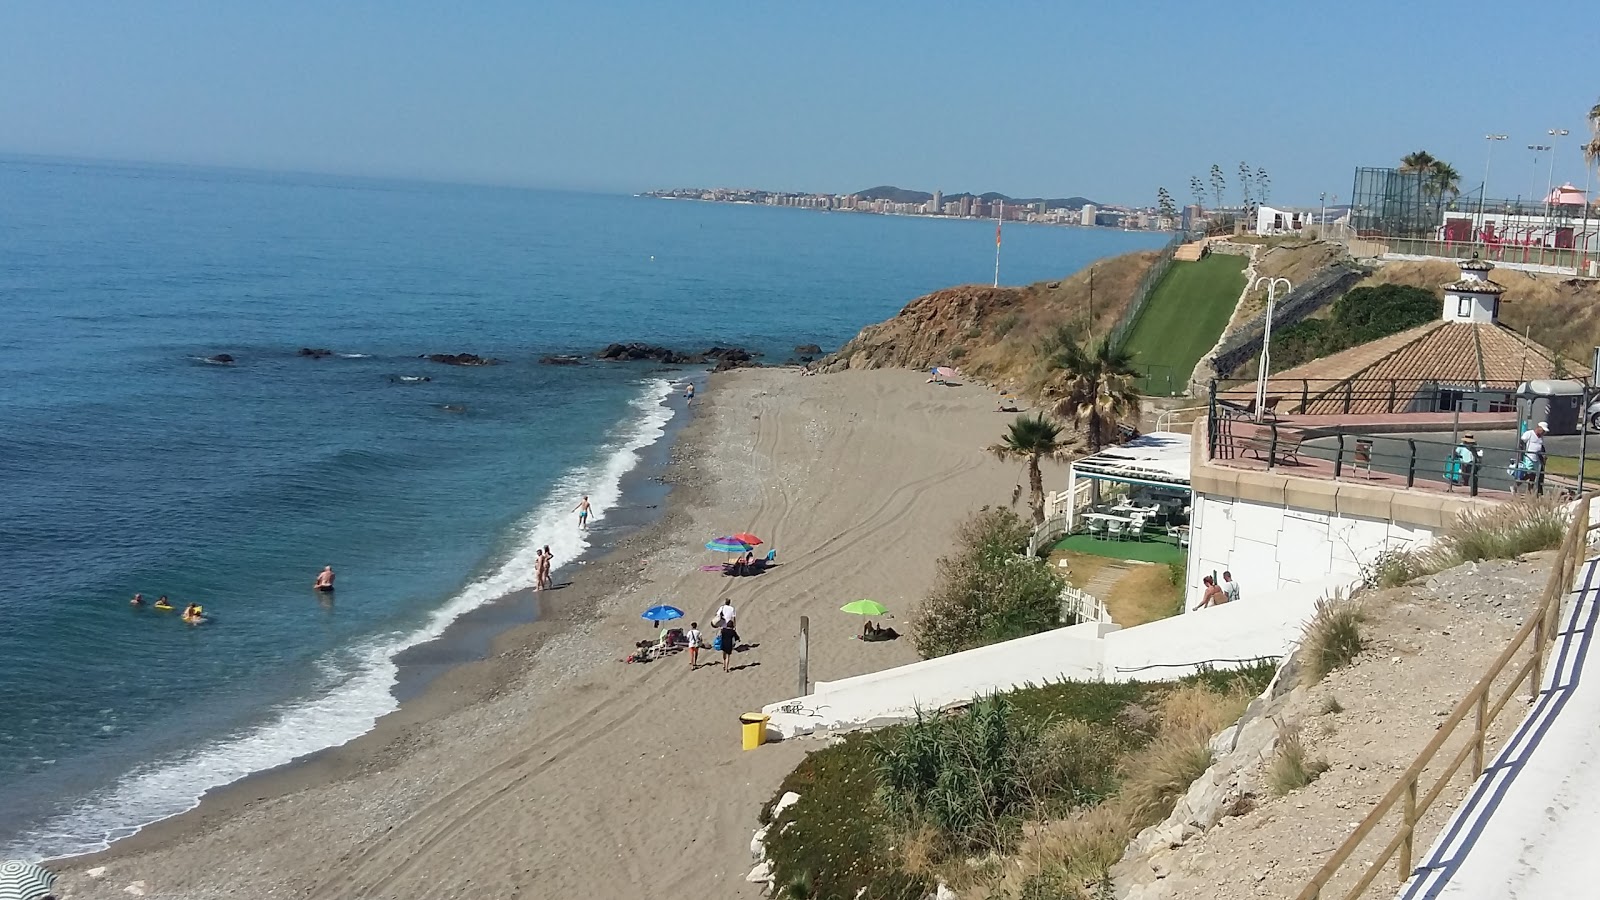 Playa la Perla'in fotoğrafı gri kum yüzey ile